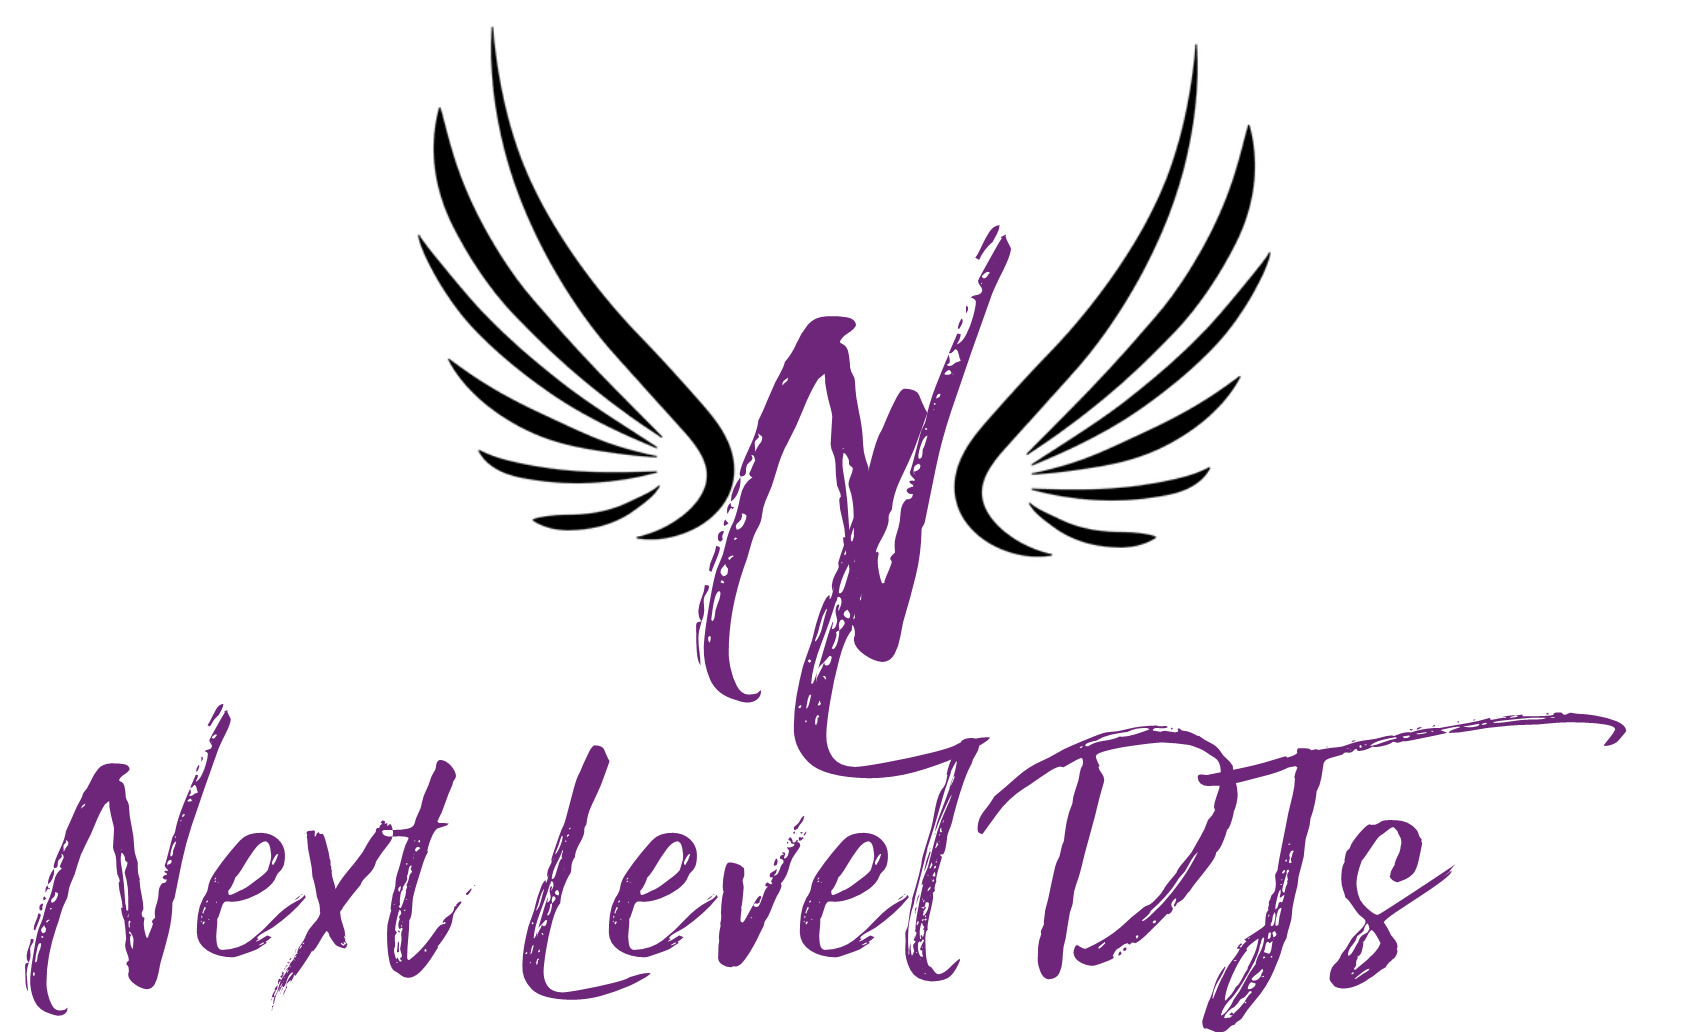 The Next Level DJs, LLC Logo